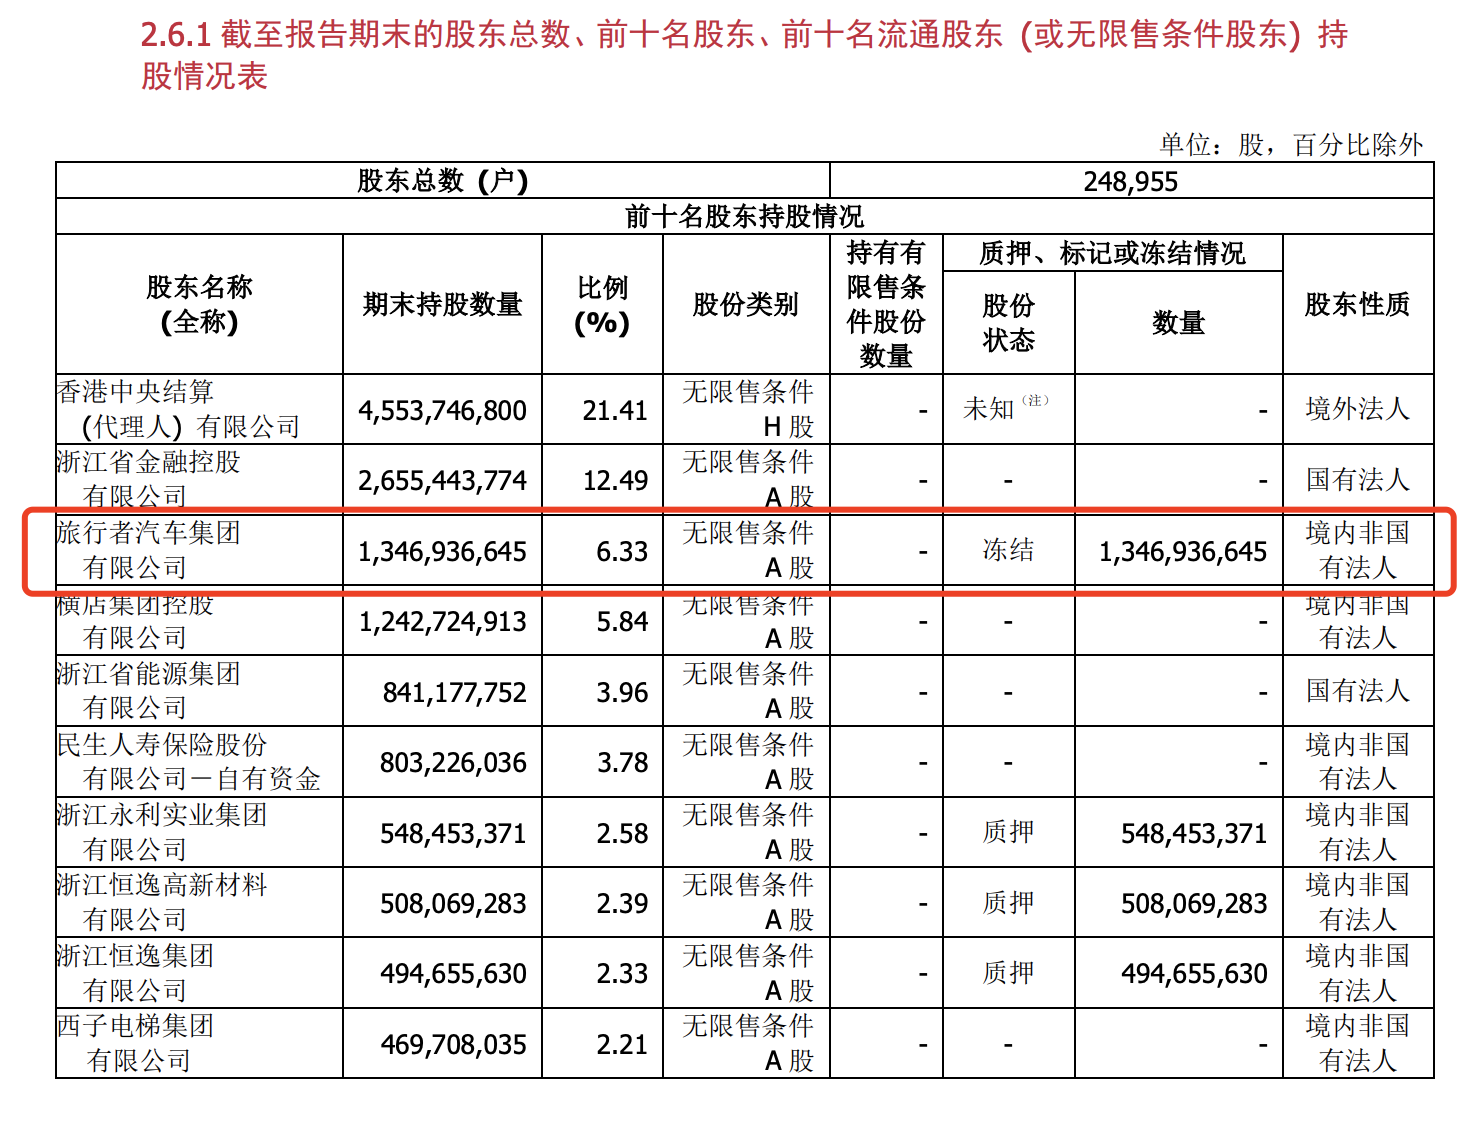 太平人寿竞得浙商银行6.33%股份 或将成该行第三大股东